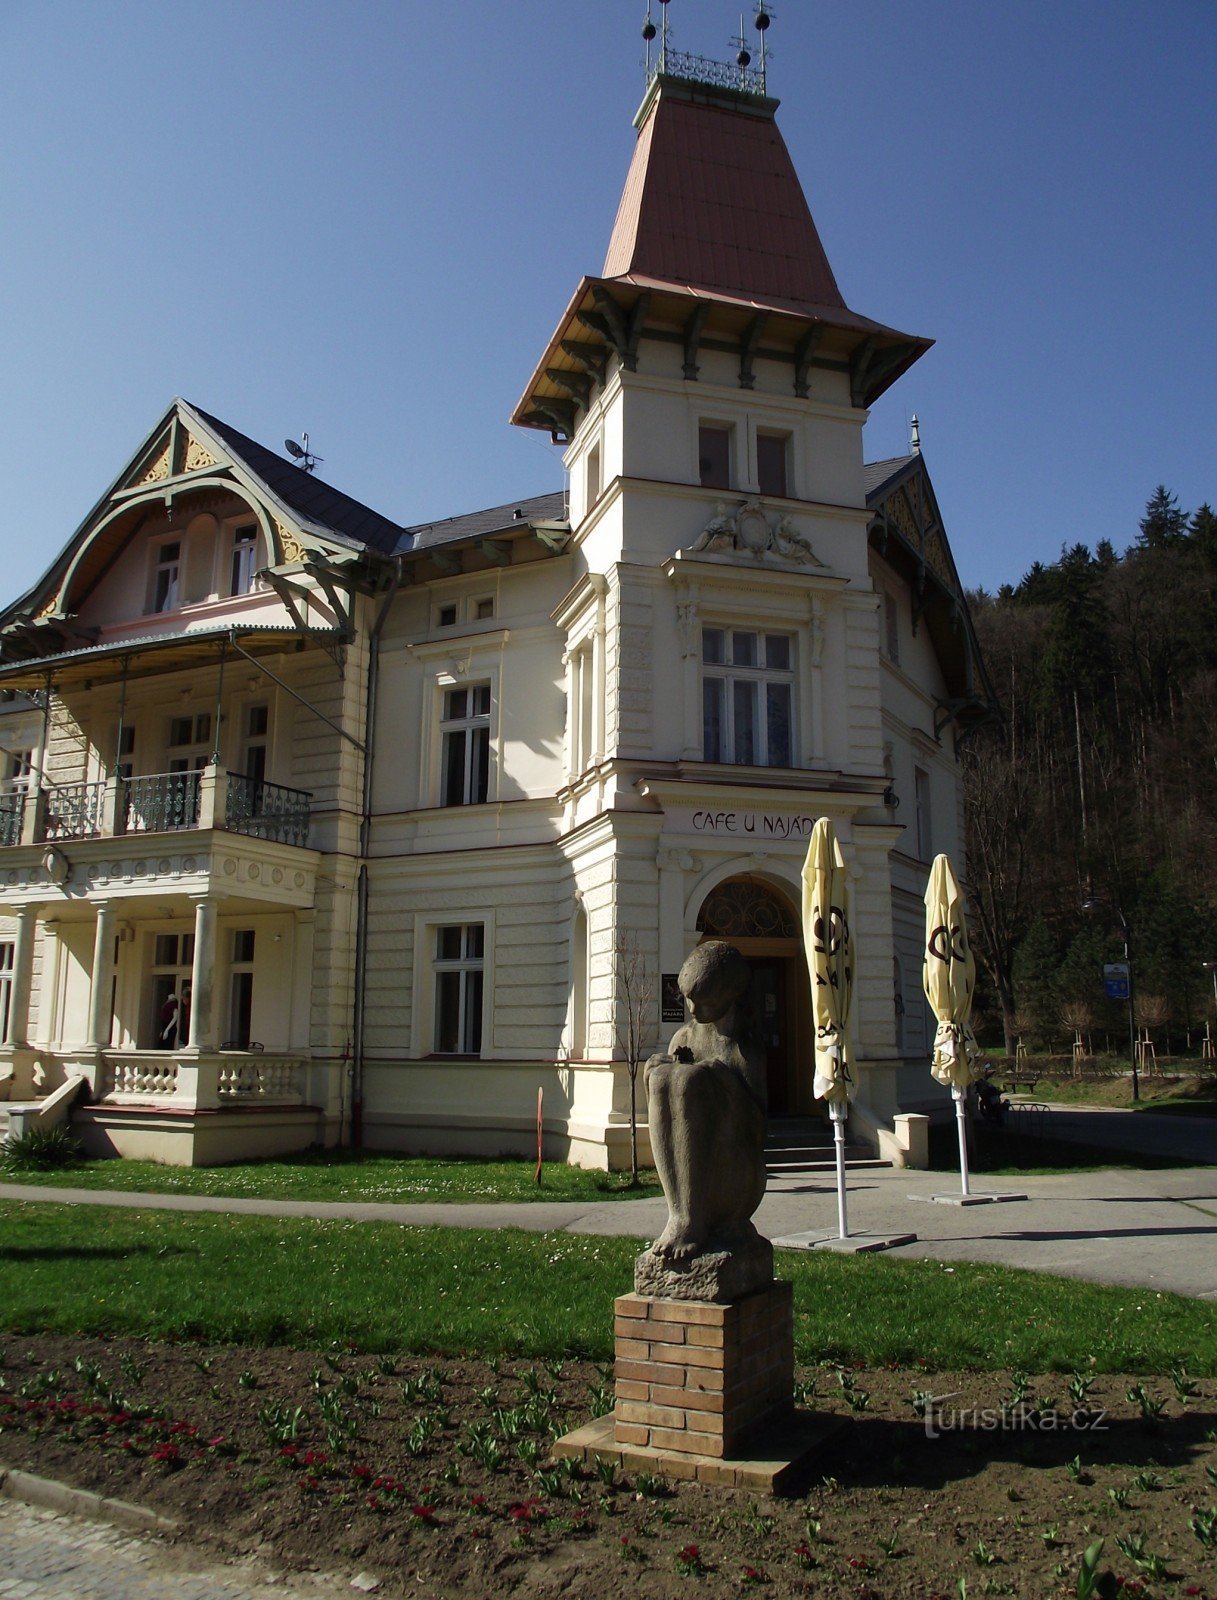 Luhačovice - Villa con farmacia (Villa Austria, U Najády)